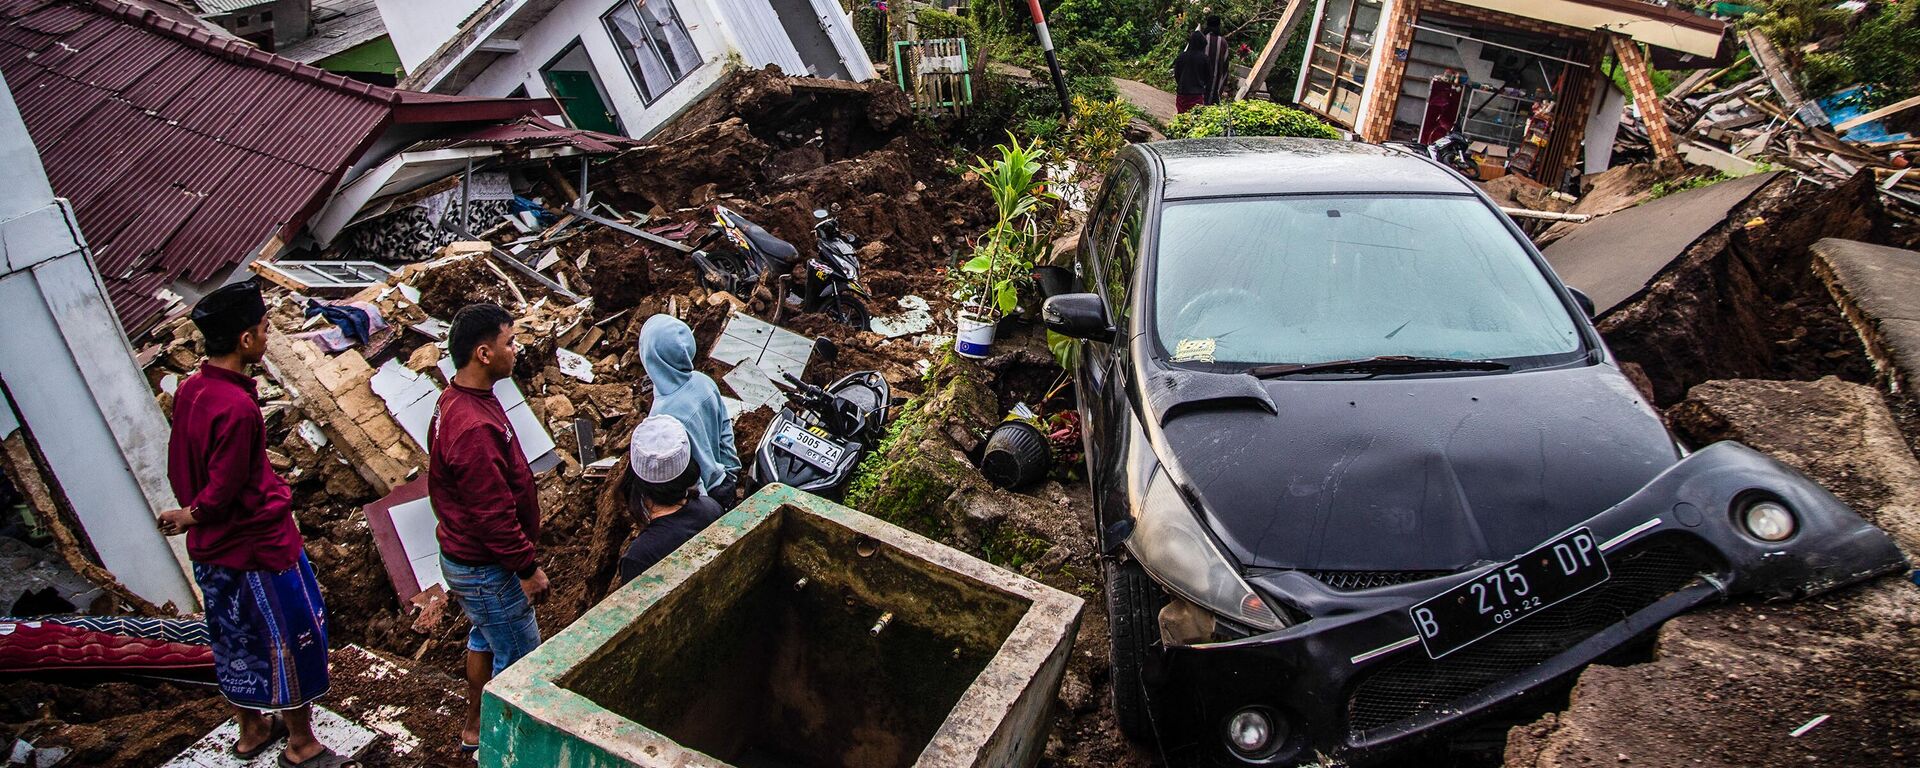 تداعيات زلزال بقوة 5.6 درجة أدى إلى مقتل ما لا يقل عن 162 شخصًا وإصابة المئات وفقد آخرين في سيانجور، إندونيسيا في 22 نوفمبر 2022. - سبوتنيك عربي, 1920, 25.11.2022